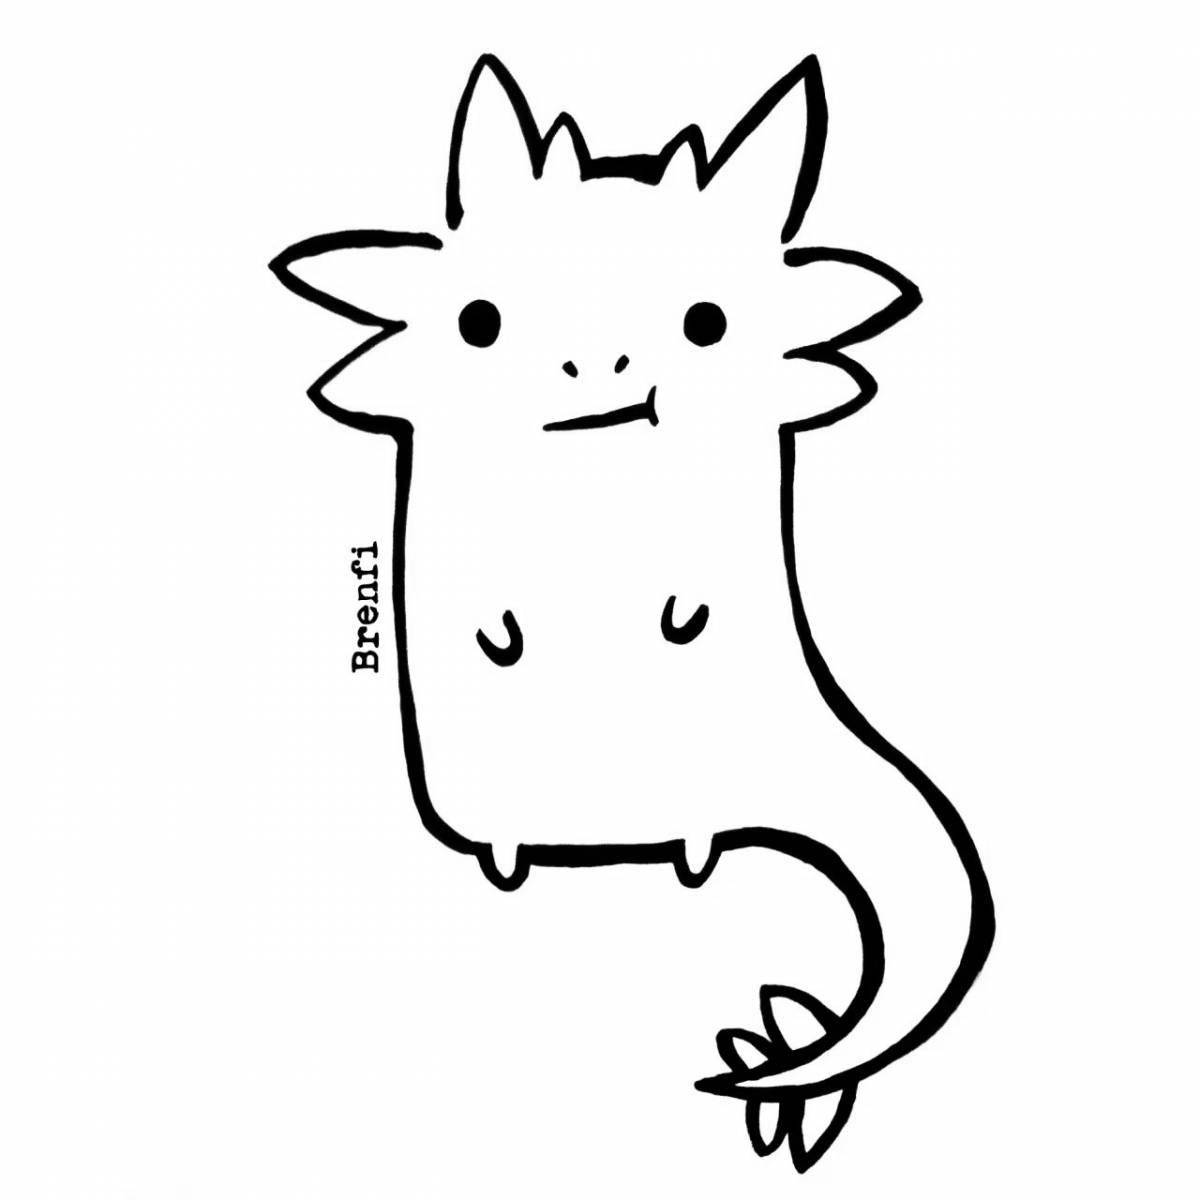 Axolotl for kids #4